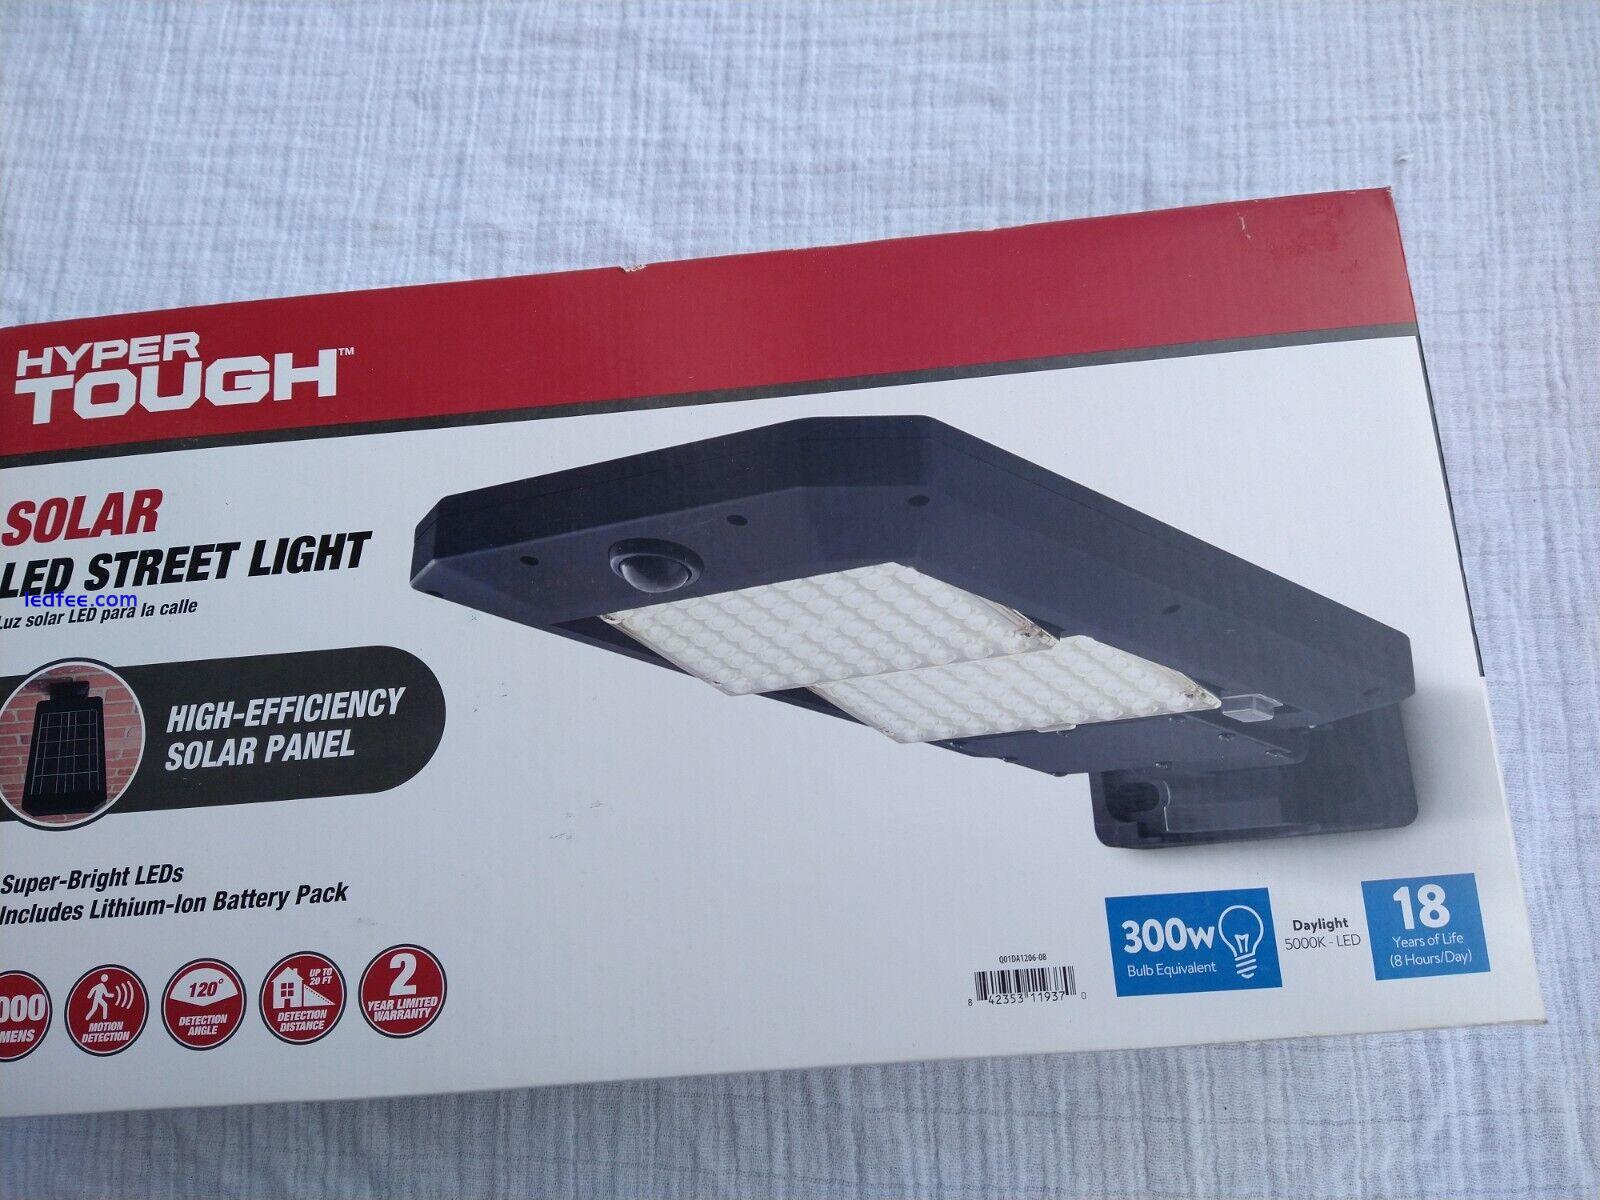 Hyper Tough Solar LED Street Light Motion Sensor 5000 Lumens 300W eq. NEW in Box 3 